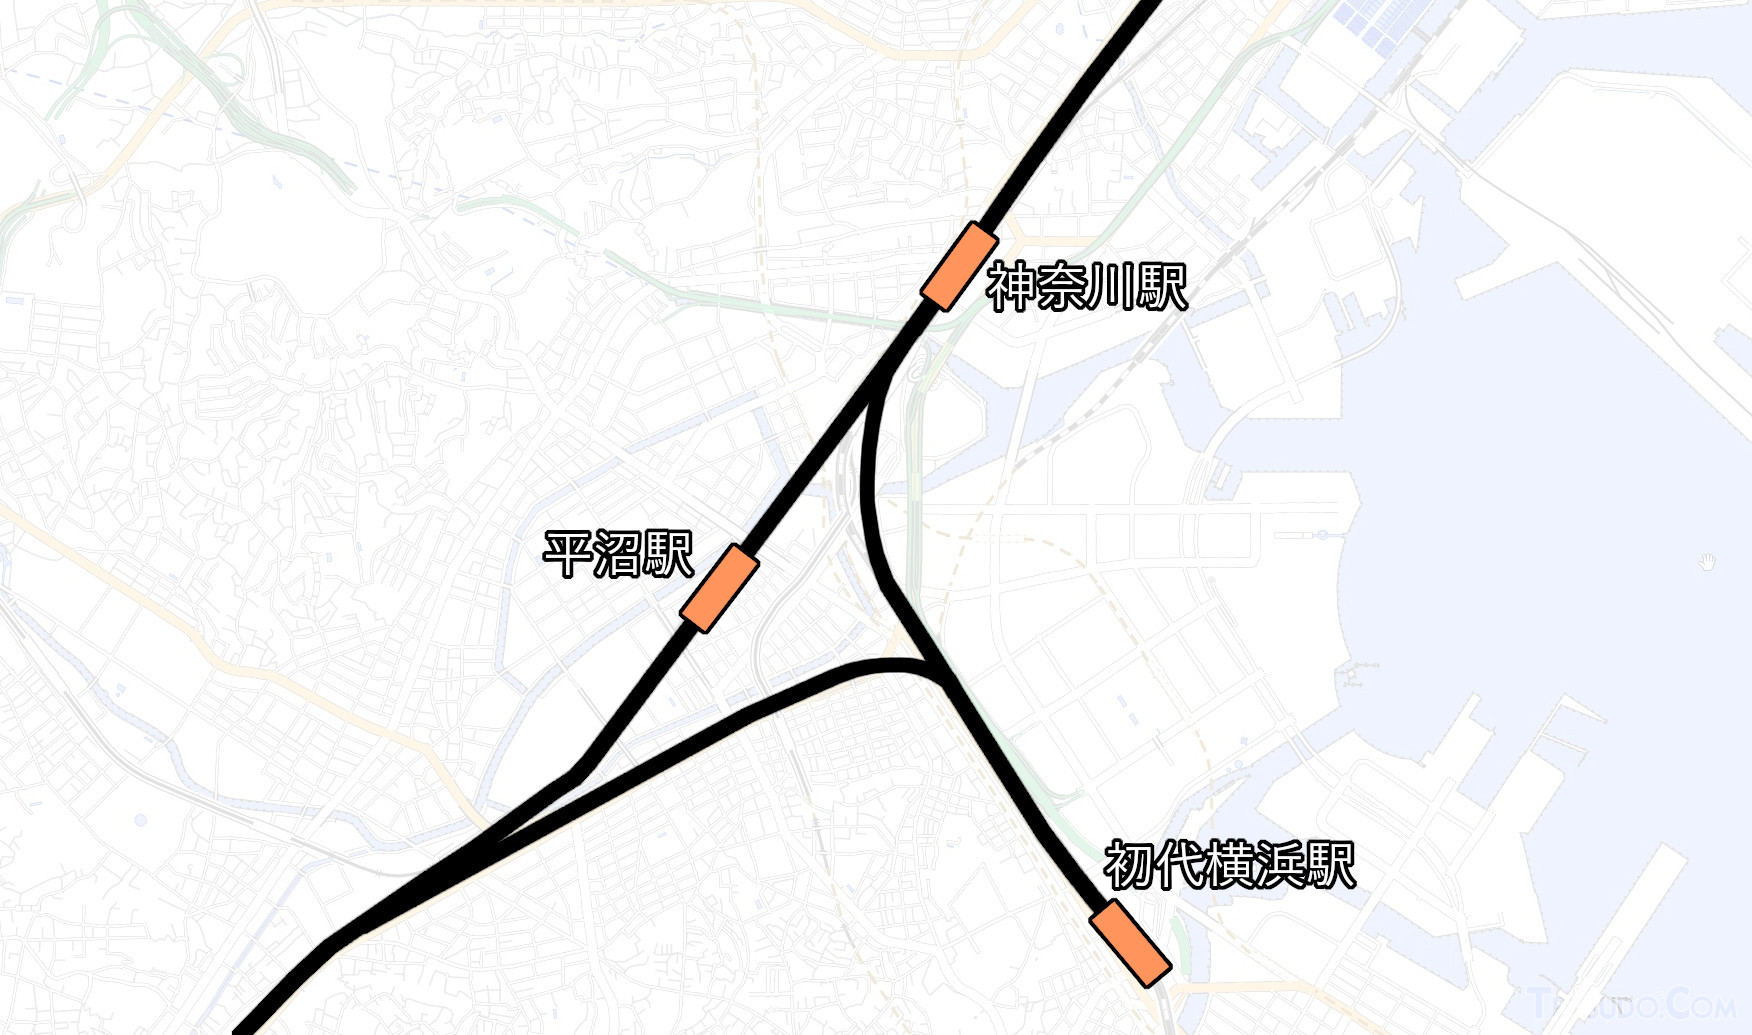 神奈川～程ケ谷間に短絡線が敷設（国土地理院「地理院地図Vector」の淡色地図に加筆）